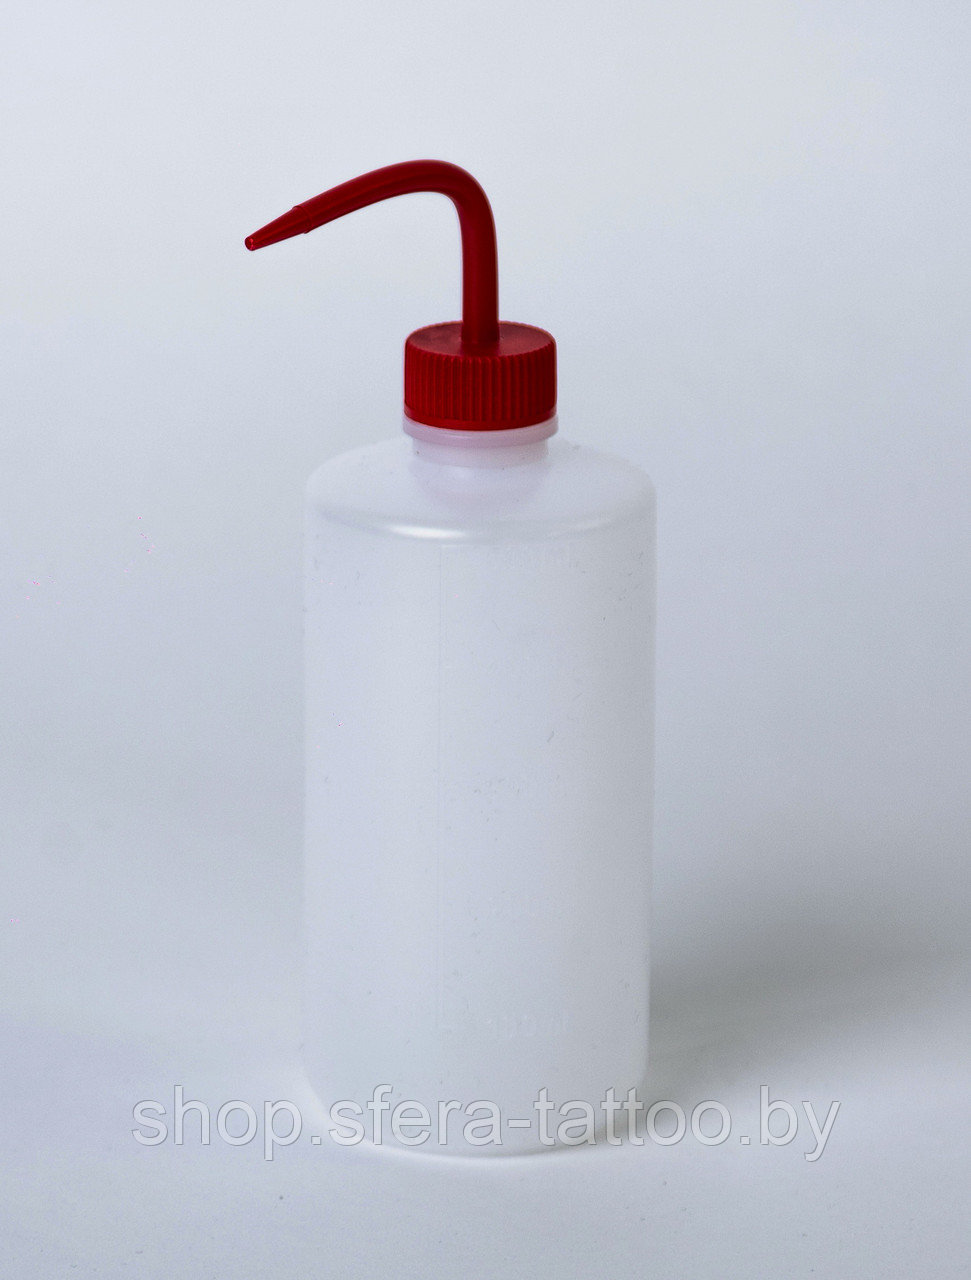 Бутылка распылитель Spray-Bottle ( Спрей Батл) 500 мл с красной крышкой